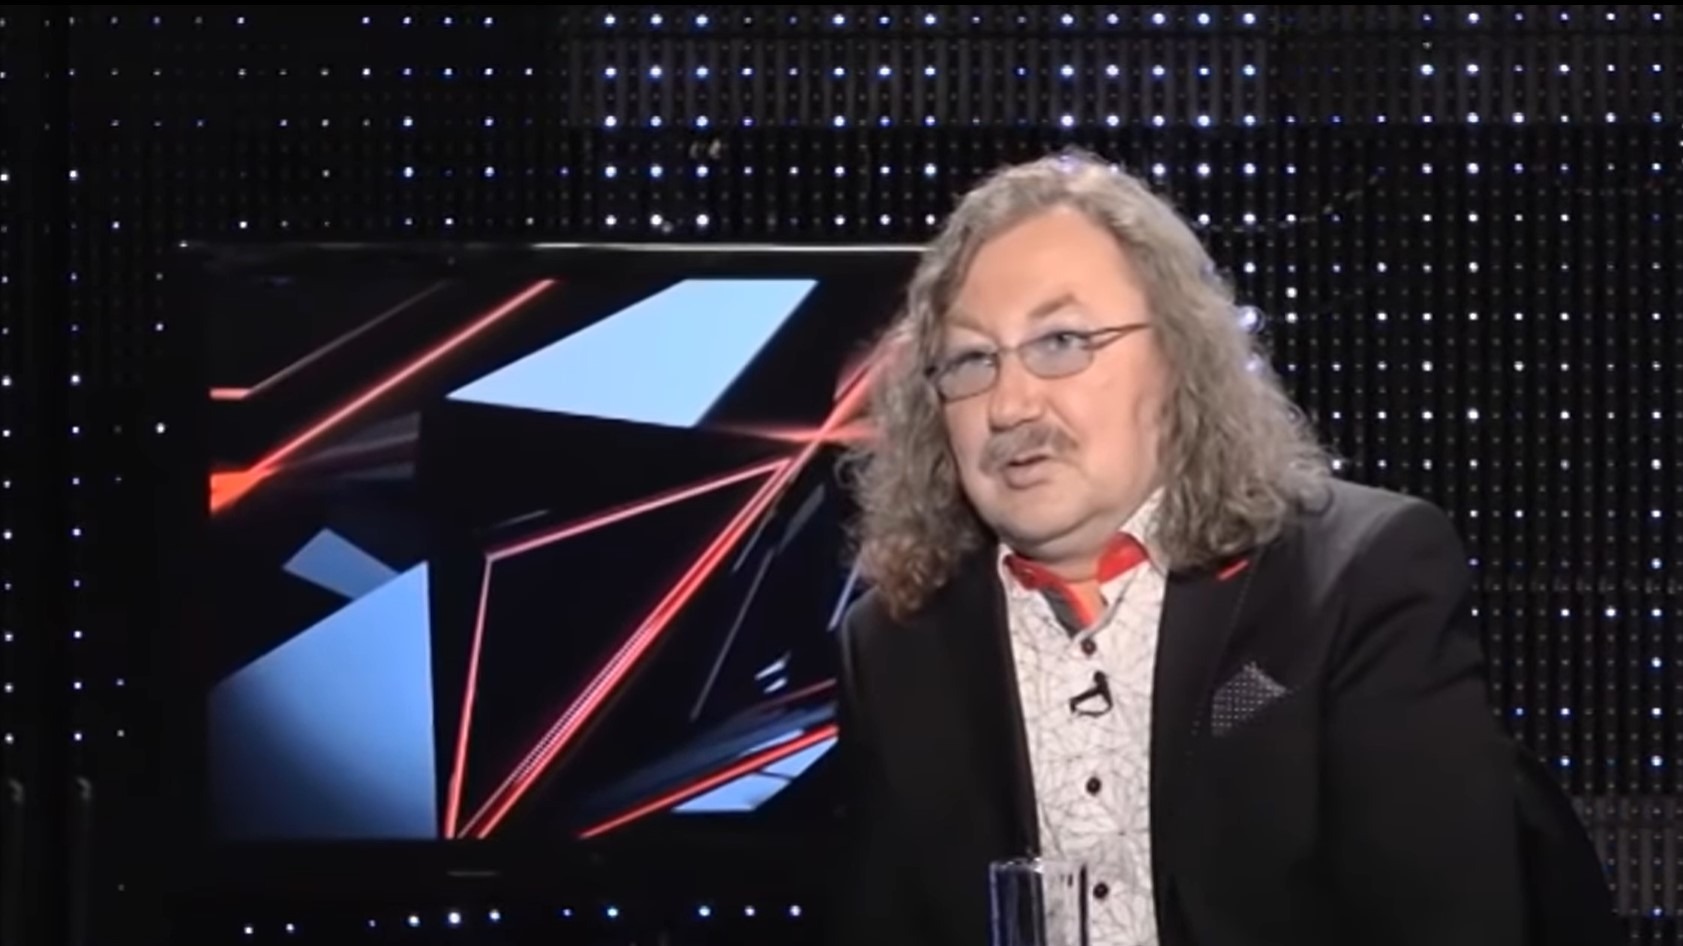 ТАСС: певец Николаев находится в больнице в плановом порядке